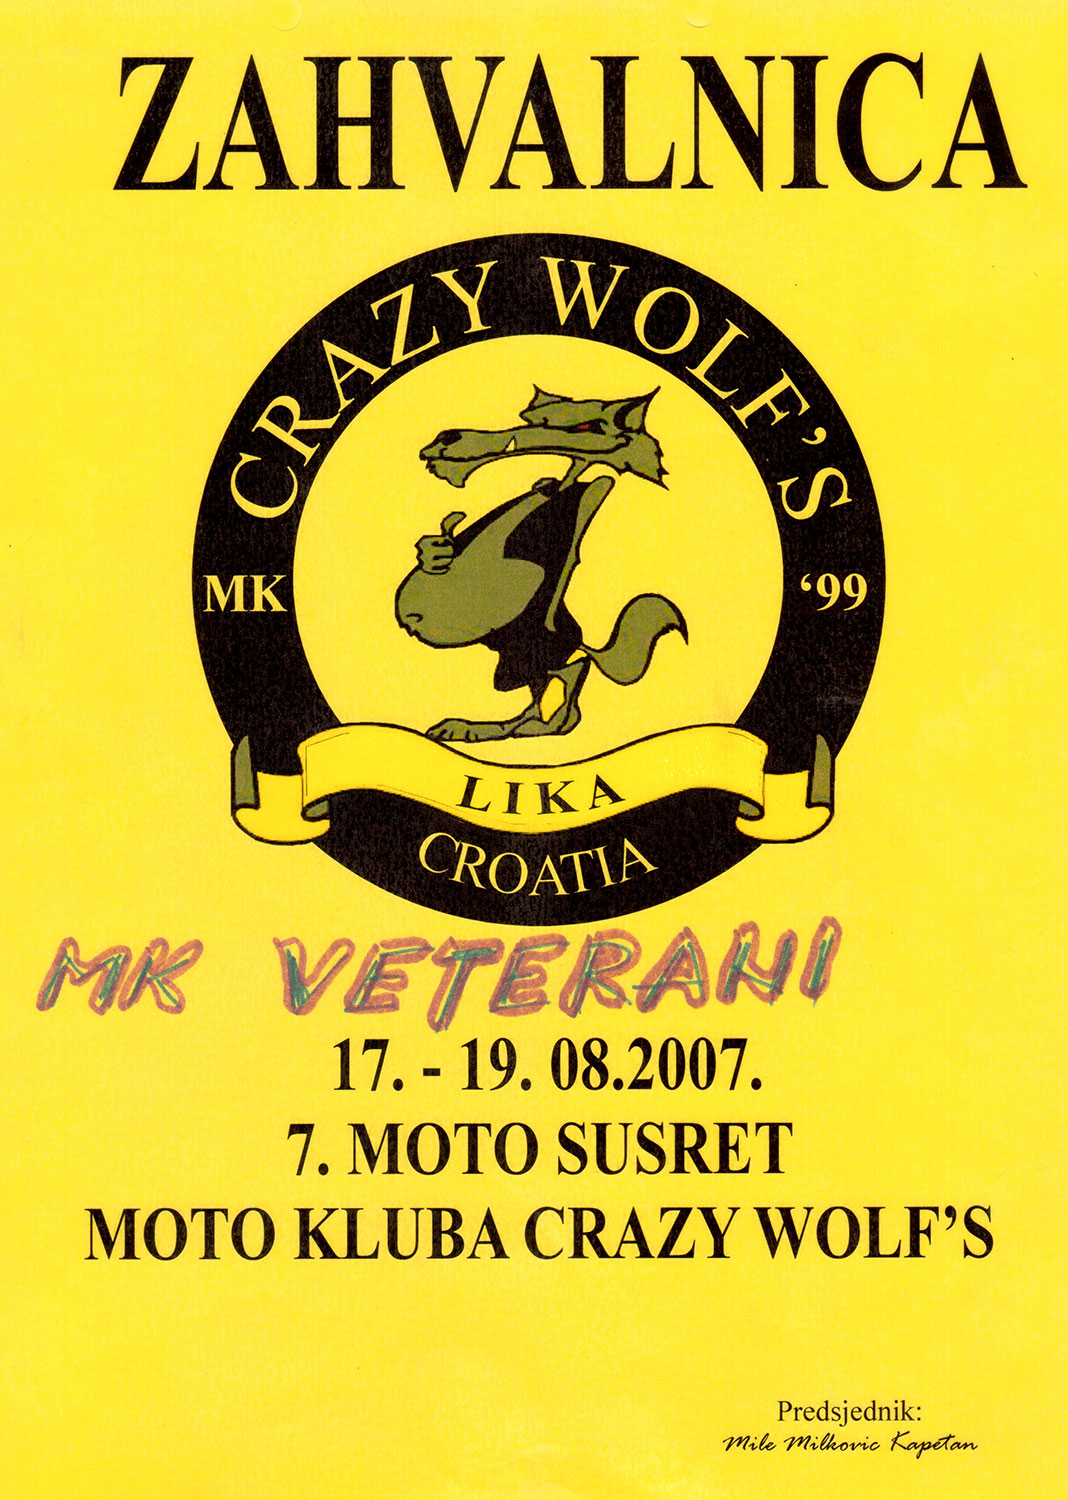 2007 08 17 mk crazy wolfs gospic